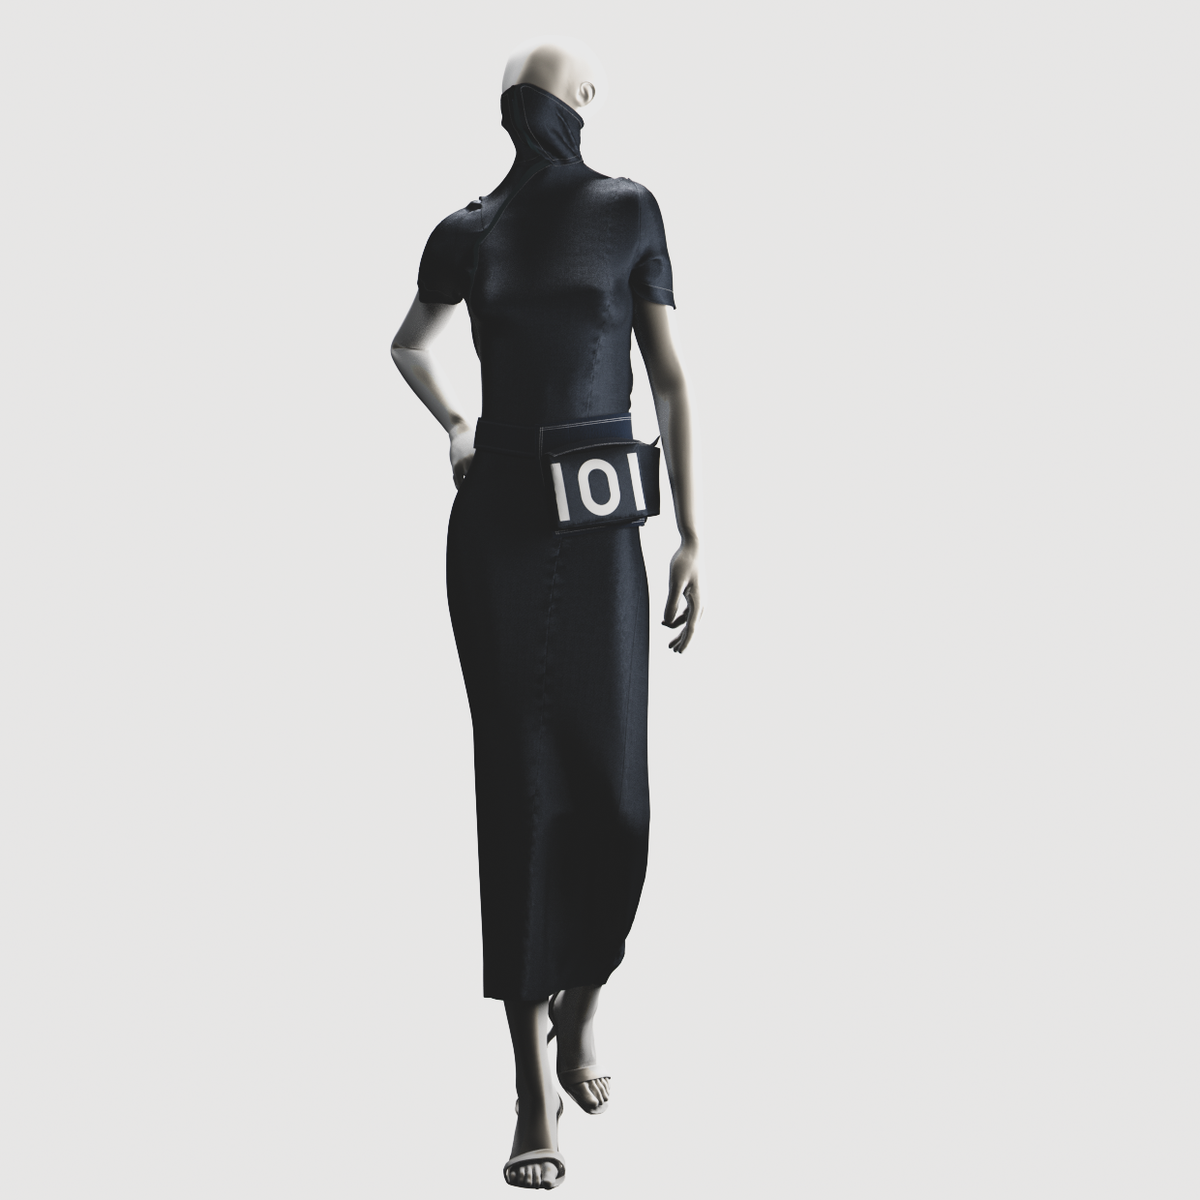 Japanese Dress - 101% | 101% clothing | 101% fashion | Fashion 101%